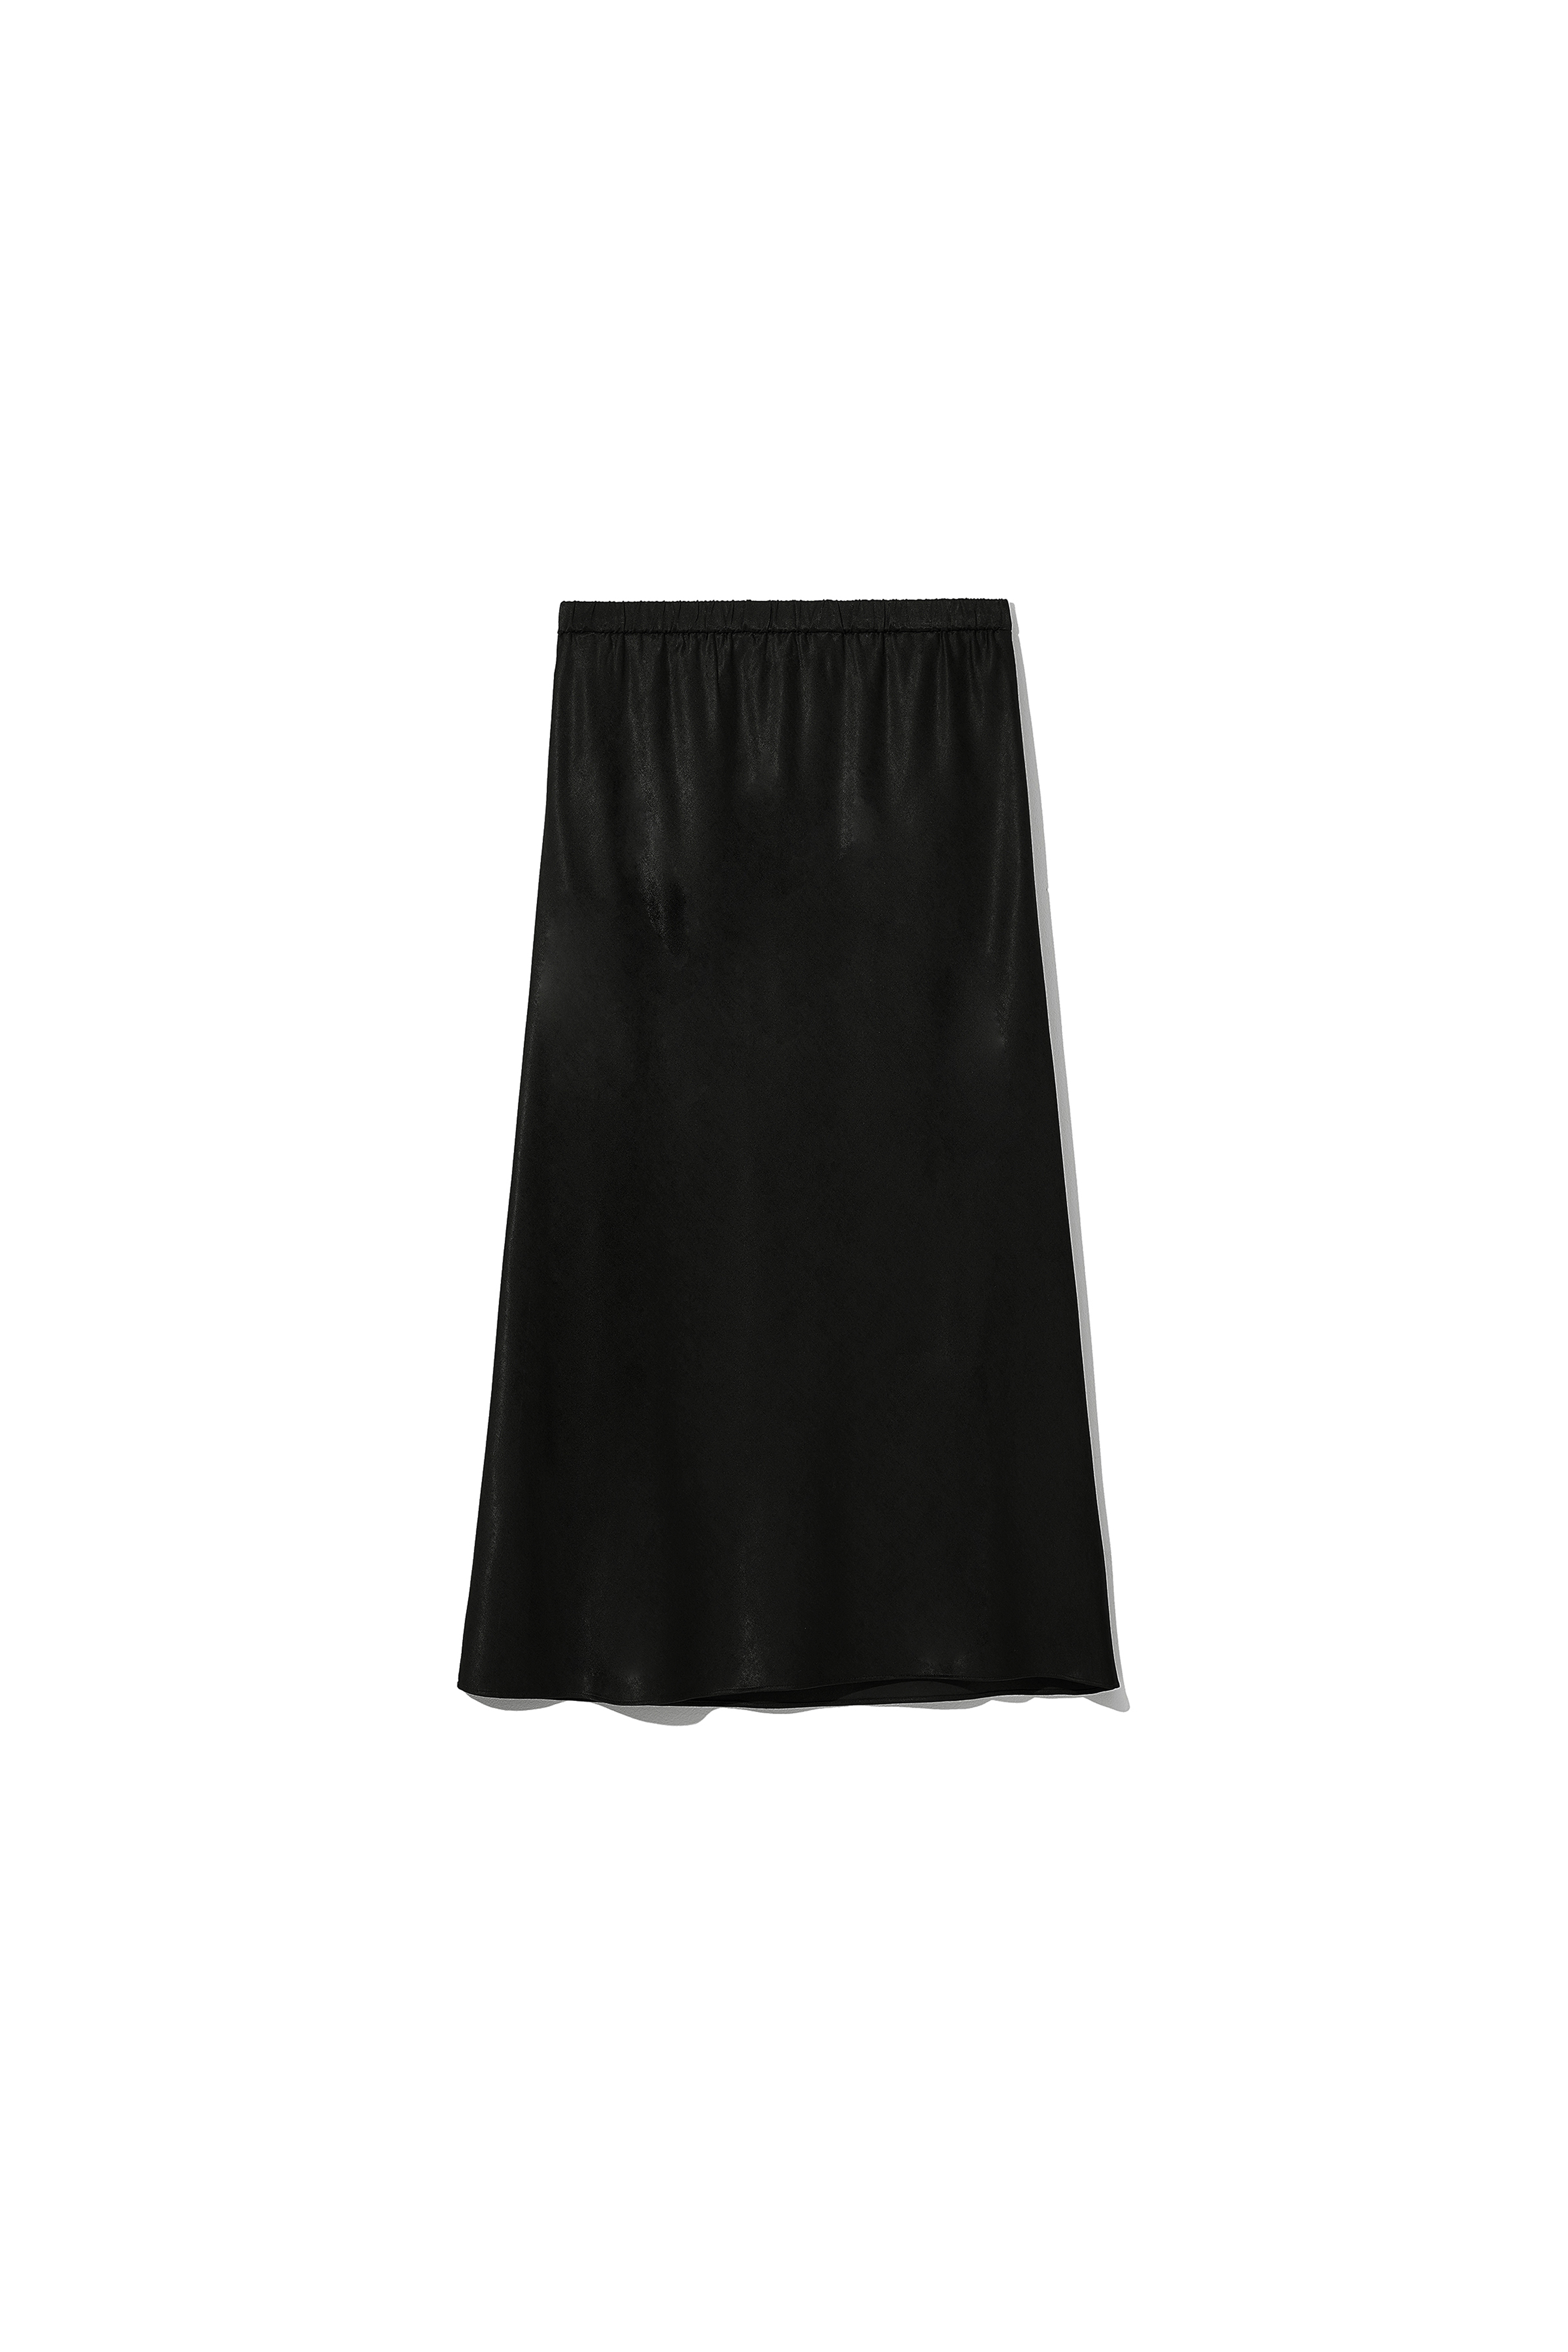 Besset Skirt Black